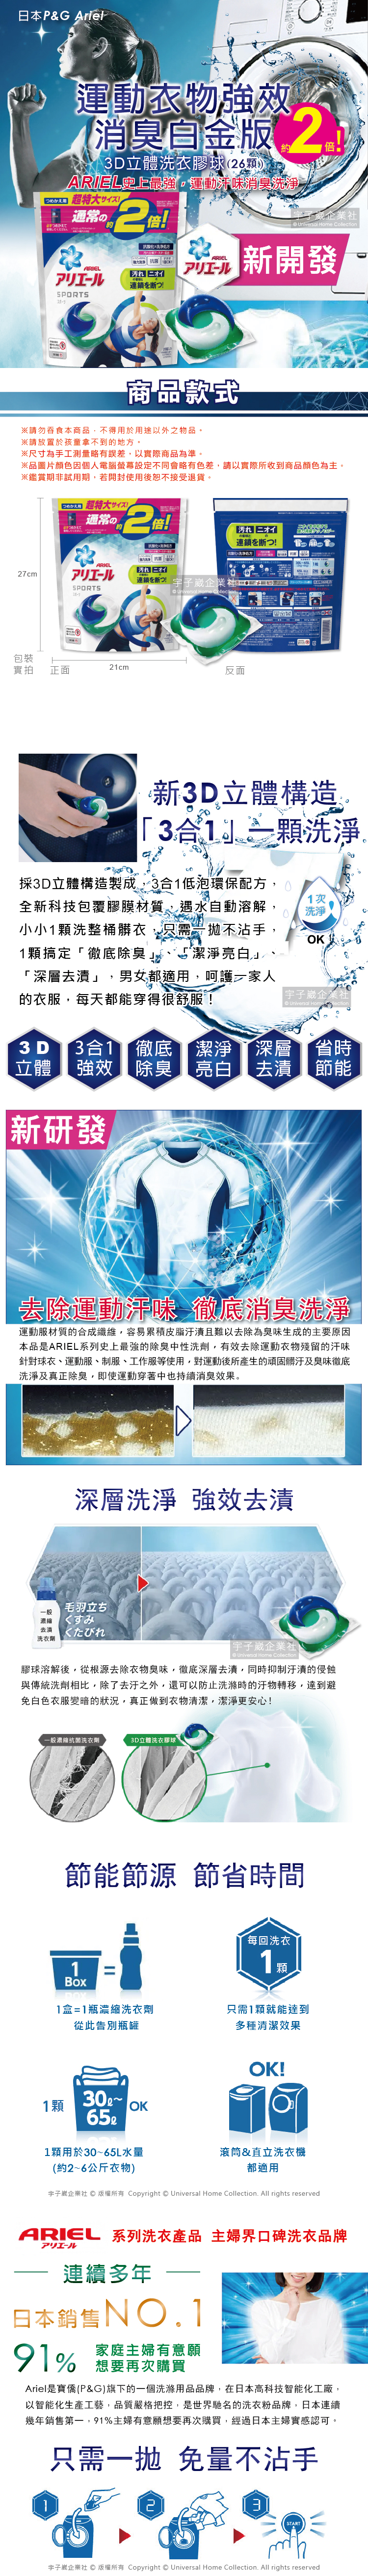 日本P&G-Ariel-運動型強效消臭洗衣膠球(新版)介紹圖